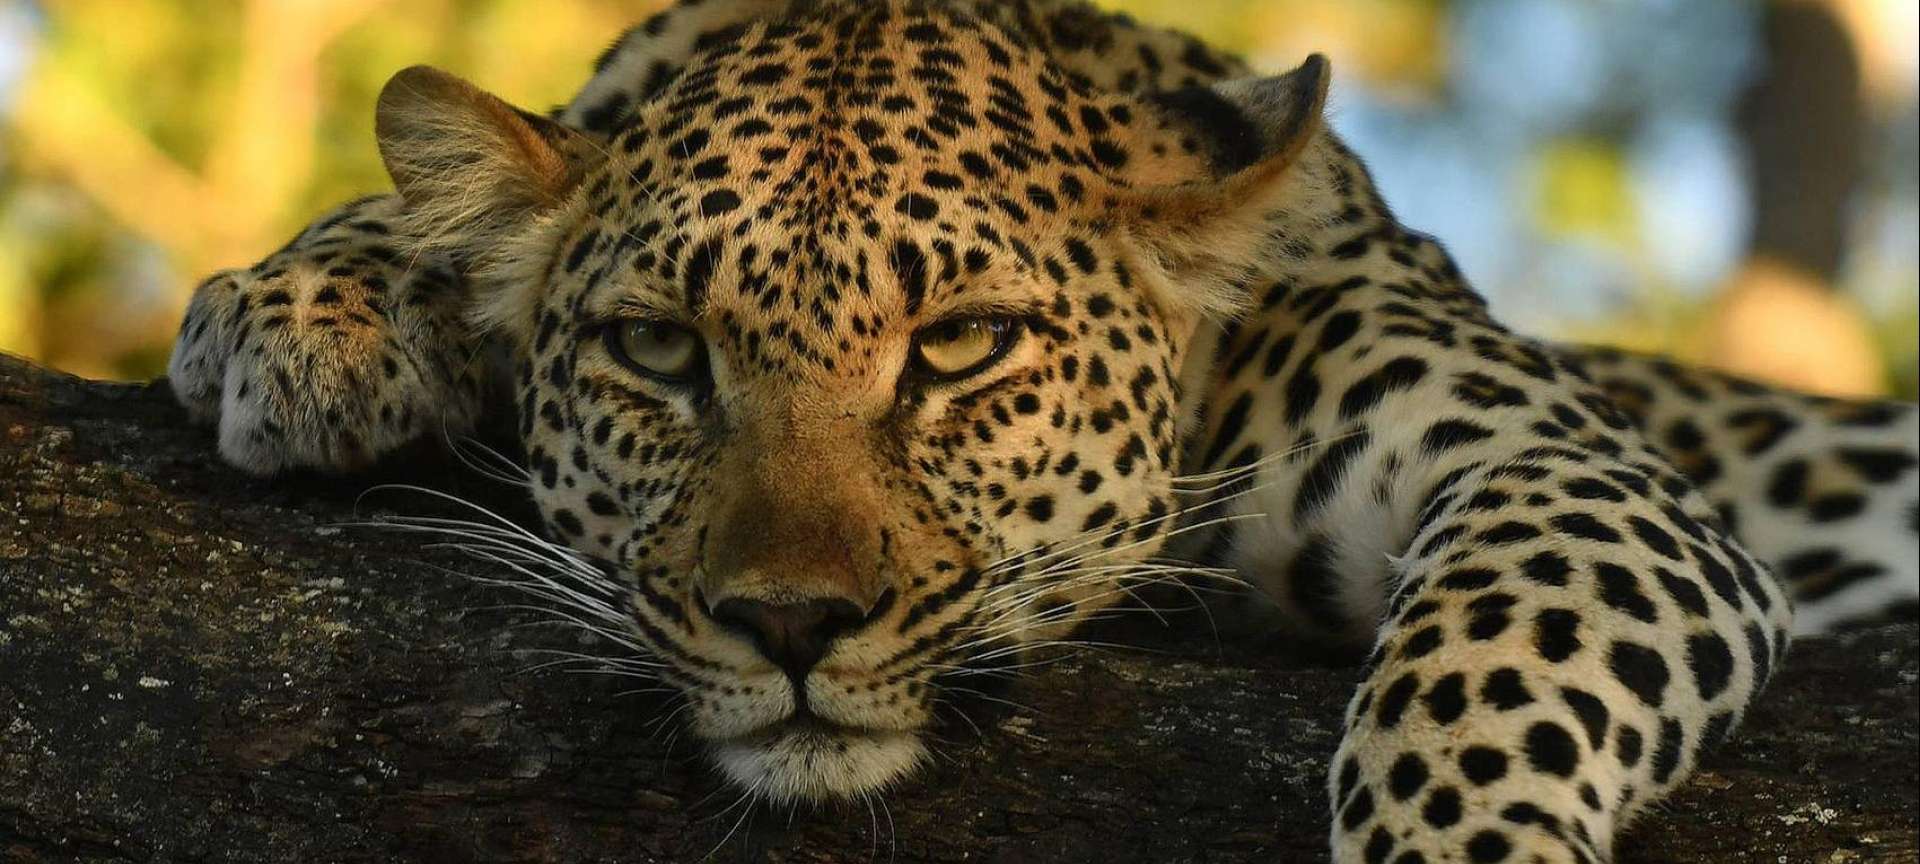 african big cats safaris reviews